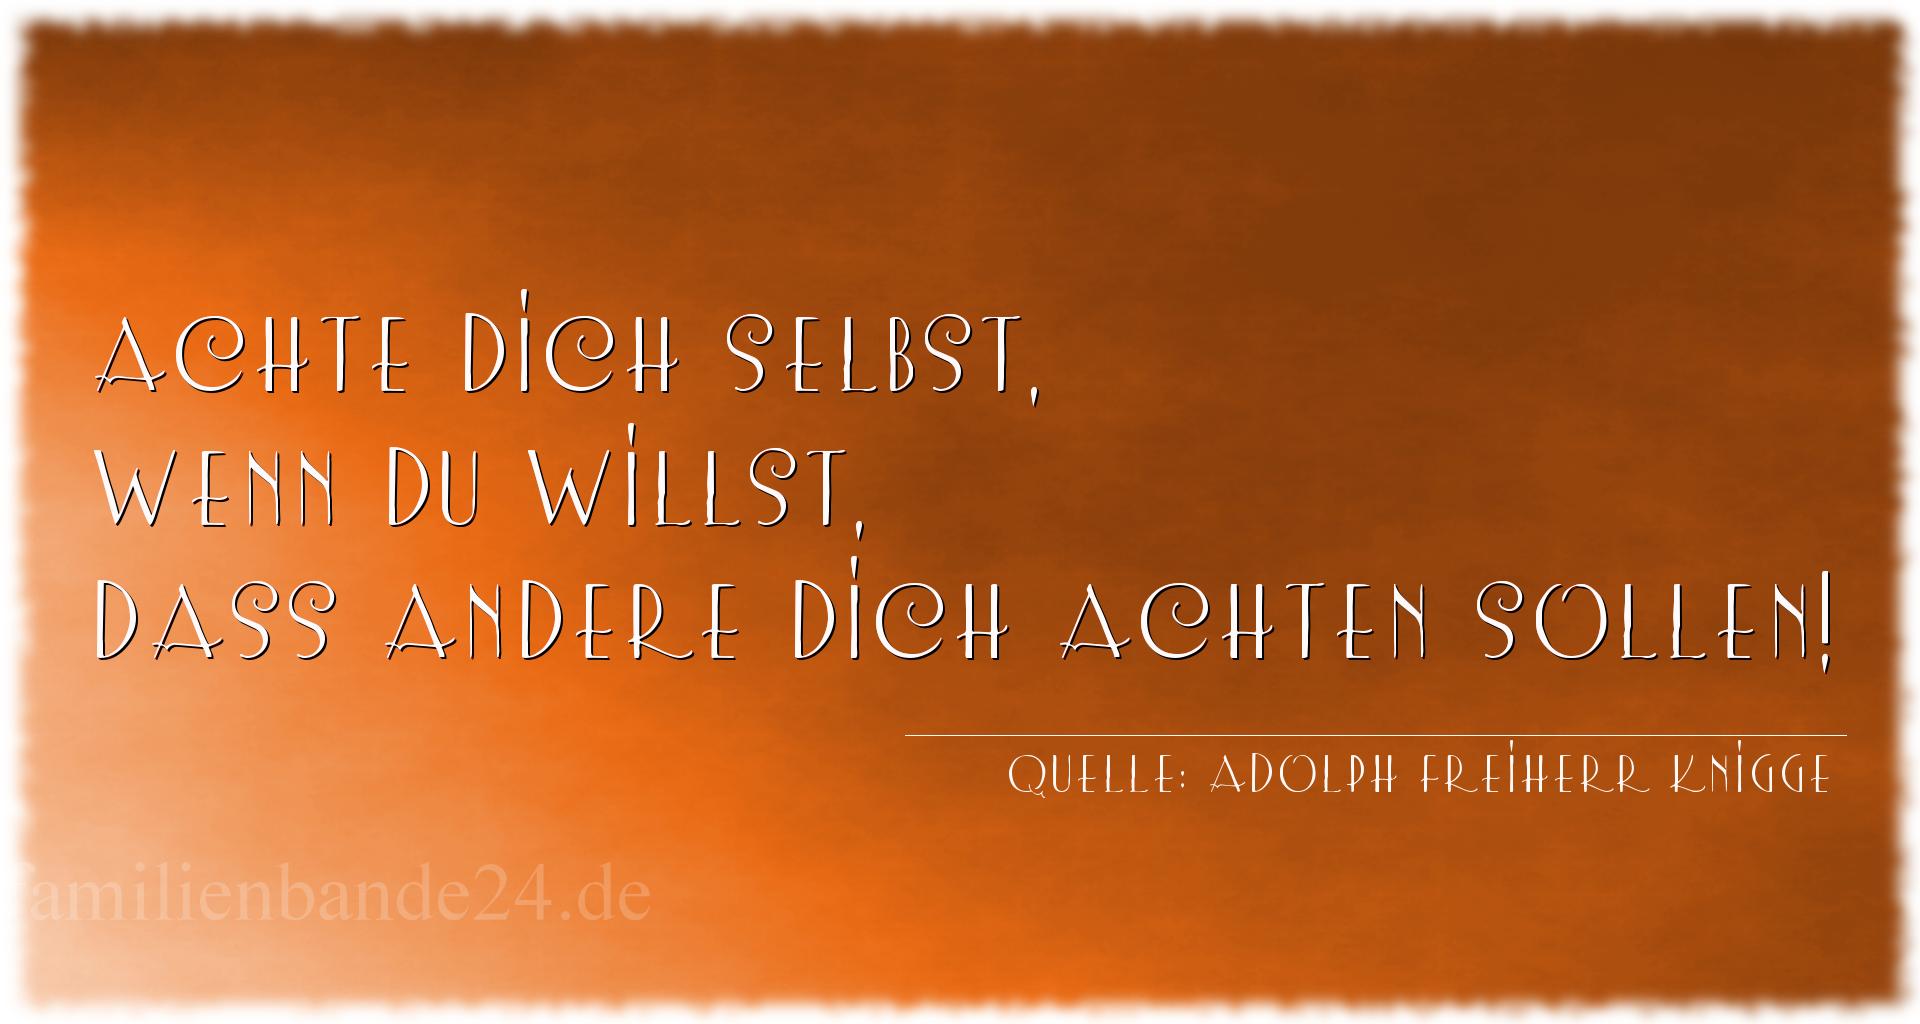 Vorschaubild  zu Aphorismus  Nr. 1186  (von Adolph Freiherr Knigge)